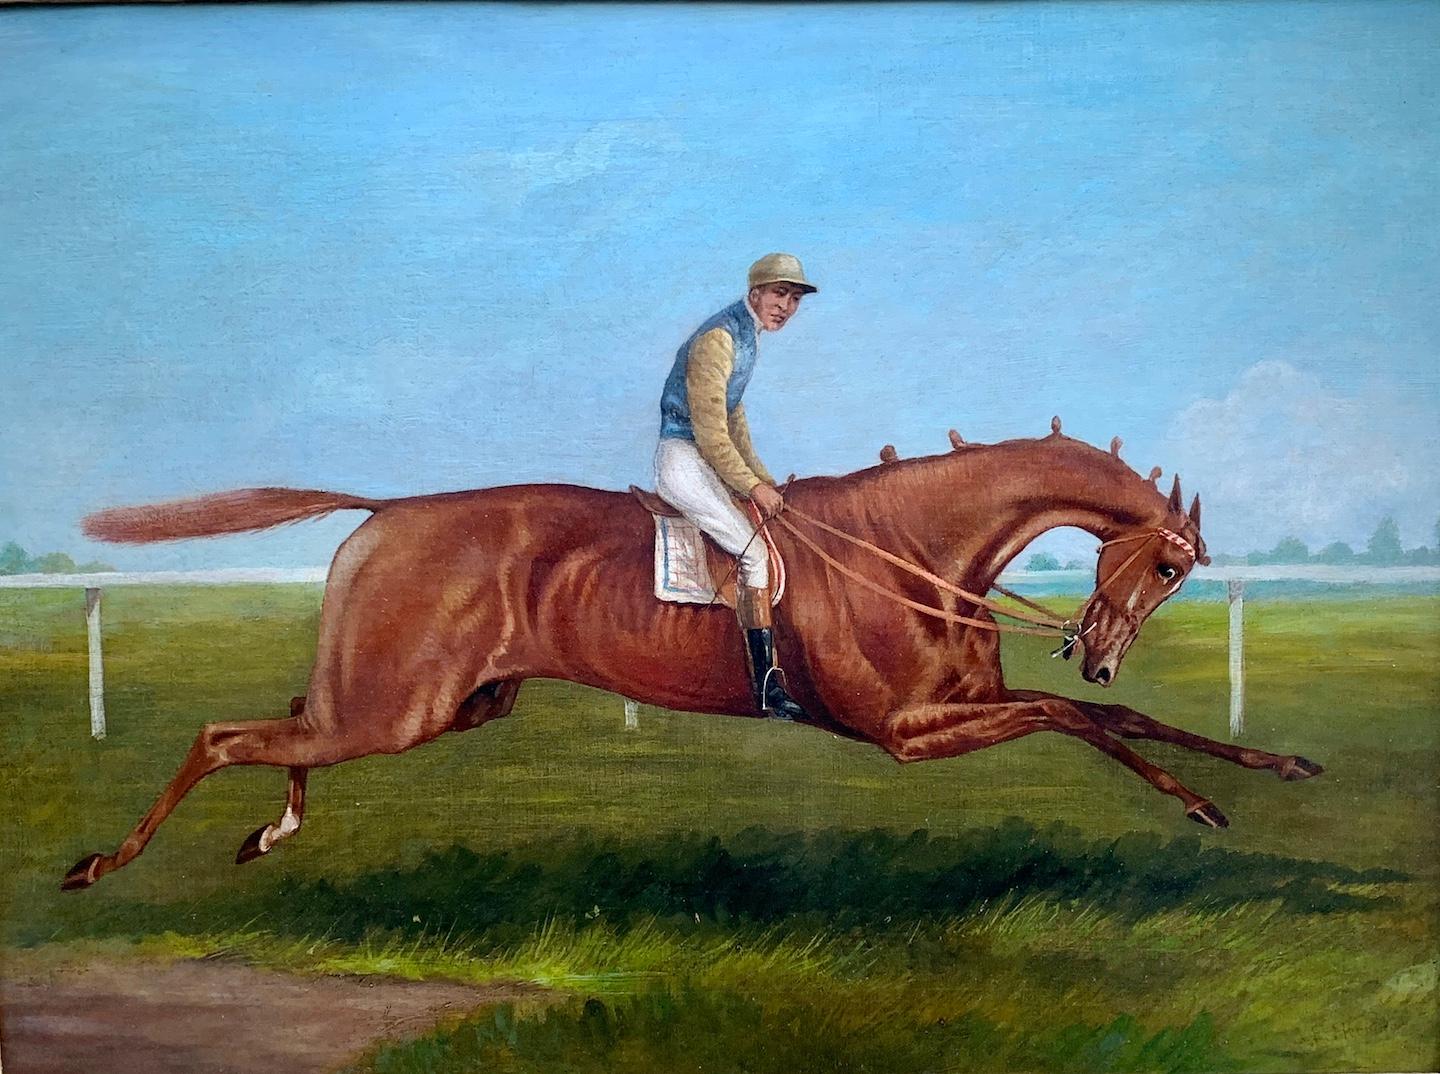  Antike englische Pferderennenszene aus dem 19. Jahrhundert in einer Landschaft mit Jockey up – Painting von John Frederick Herring Sr.